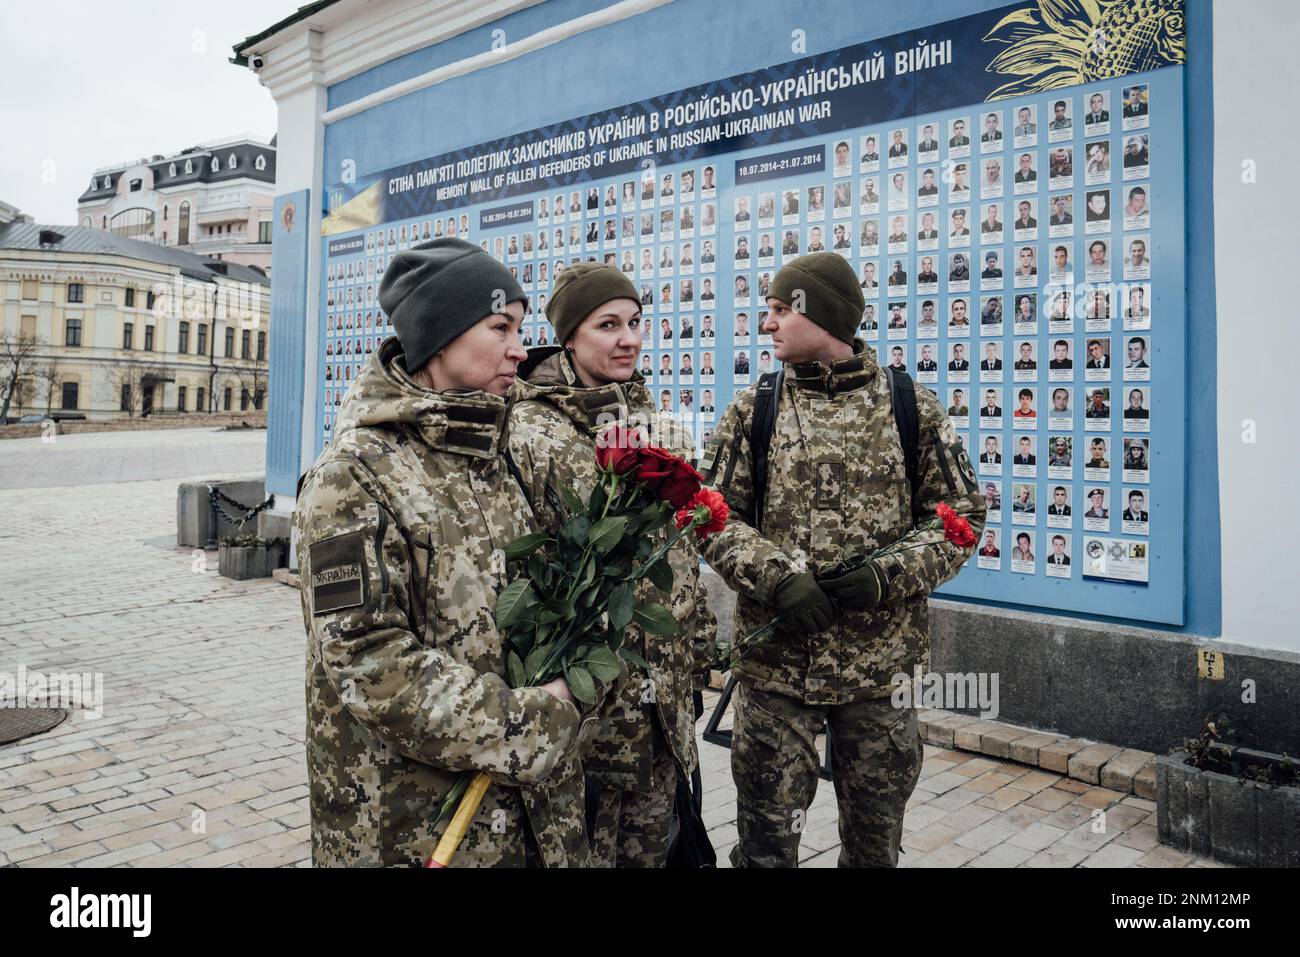 Ucrania / Kiev - 24/2/2023 - Adrien Vautier / Le Pictorium - Guerra en Ucrania - 1 año - - 24/2/2023 - Ucrania / Kiev - Soldados ucranianos ponen rosas en el 'Muro de los Héroes', el monumento se erigió para honrar a los soldados que han estado desaparecidos en el conflicto desde 2014. NO RUSIA Foto de stock